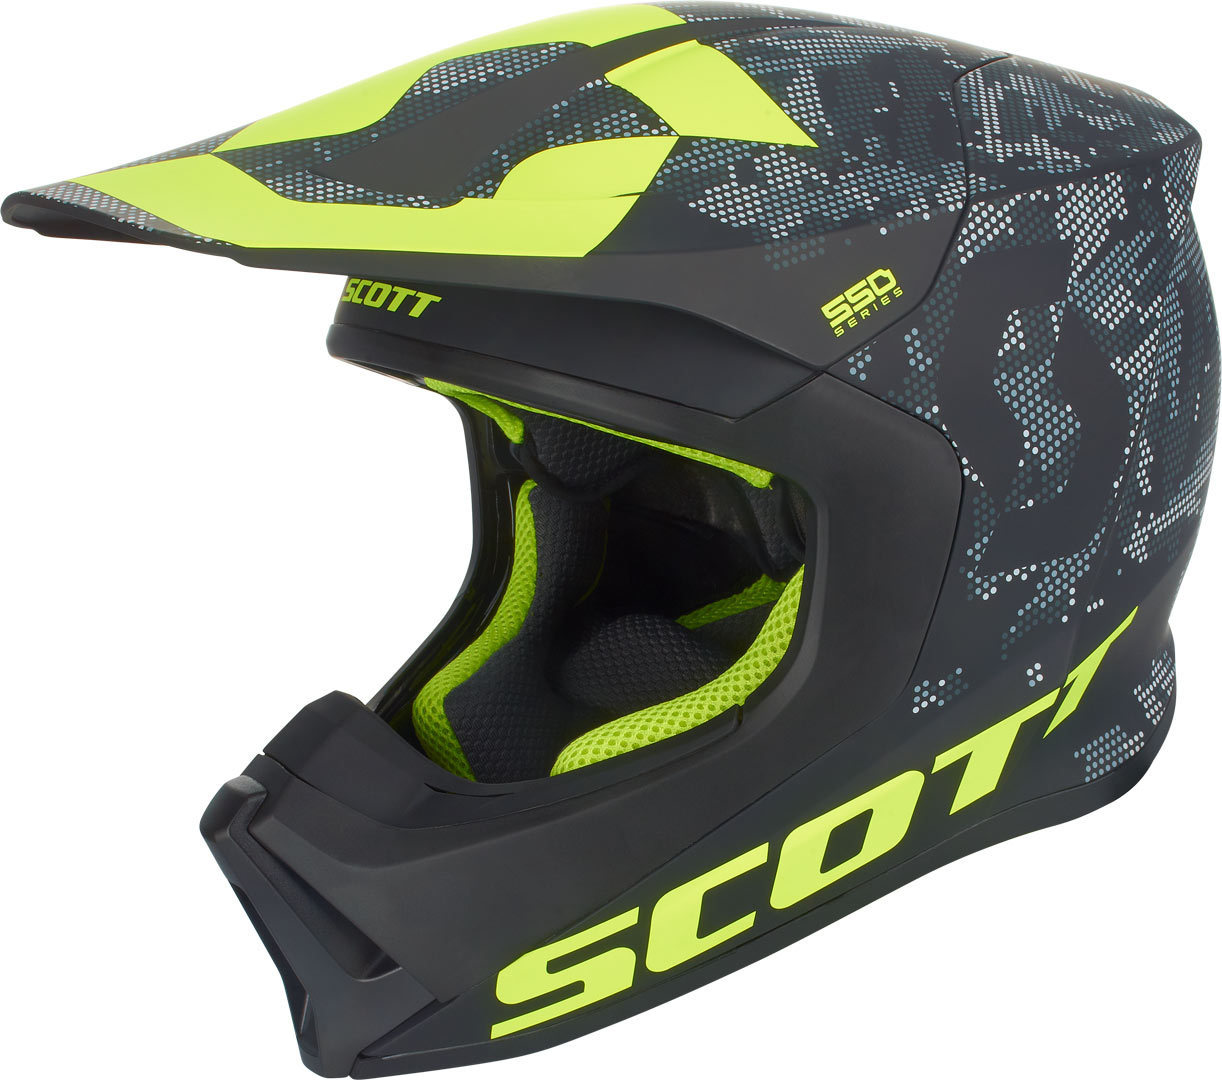 Scott 350 Kids Dirt visor casco visera azul/verde 2015 